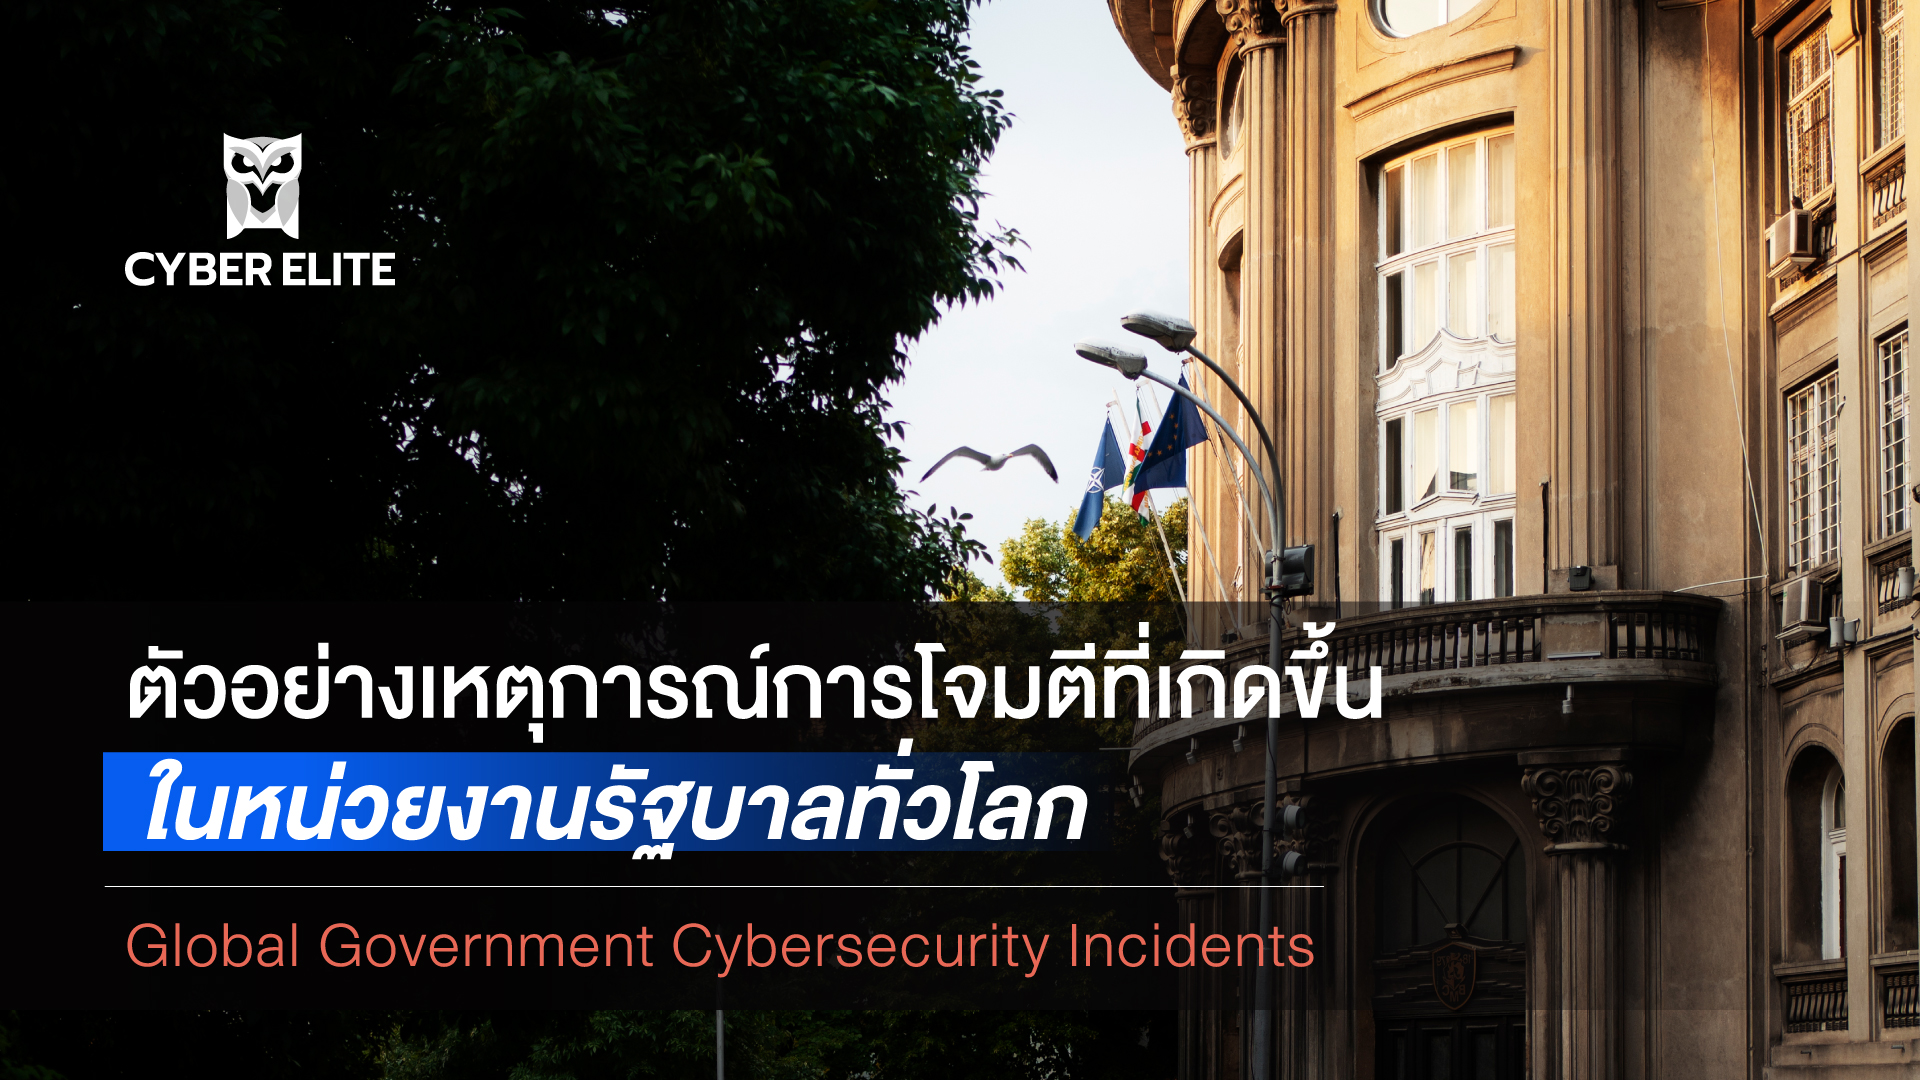 ตัวอย่างเหตุการณ์การโจมตีที่เกิดขึ้นในหน่วยงานรัฐบาลทั่วโลก (Global Government Cybersecurity Incidents)